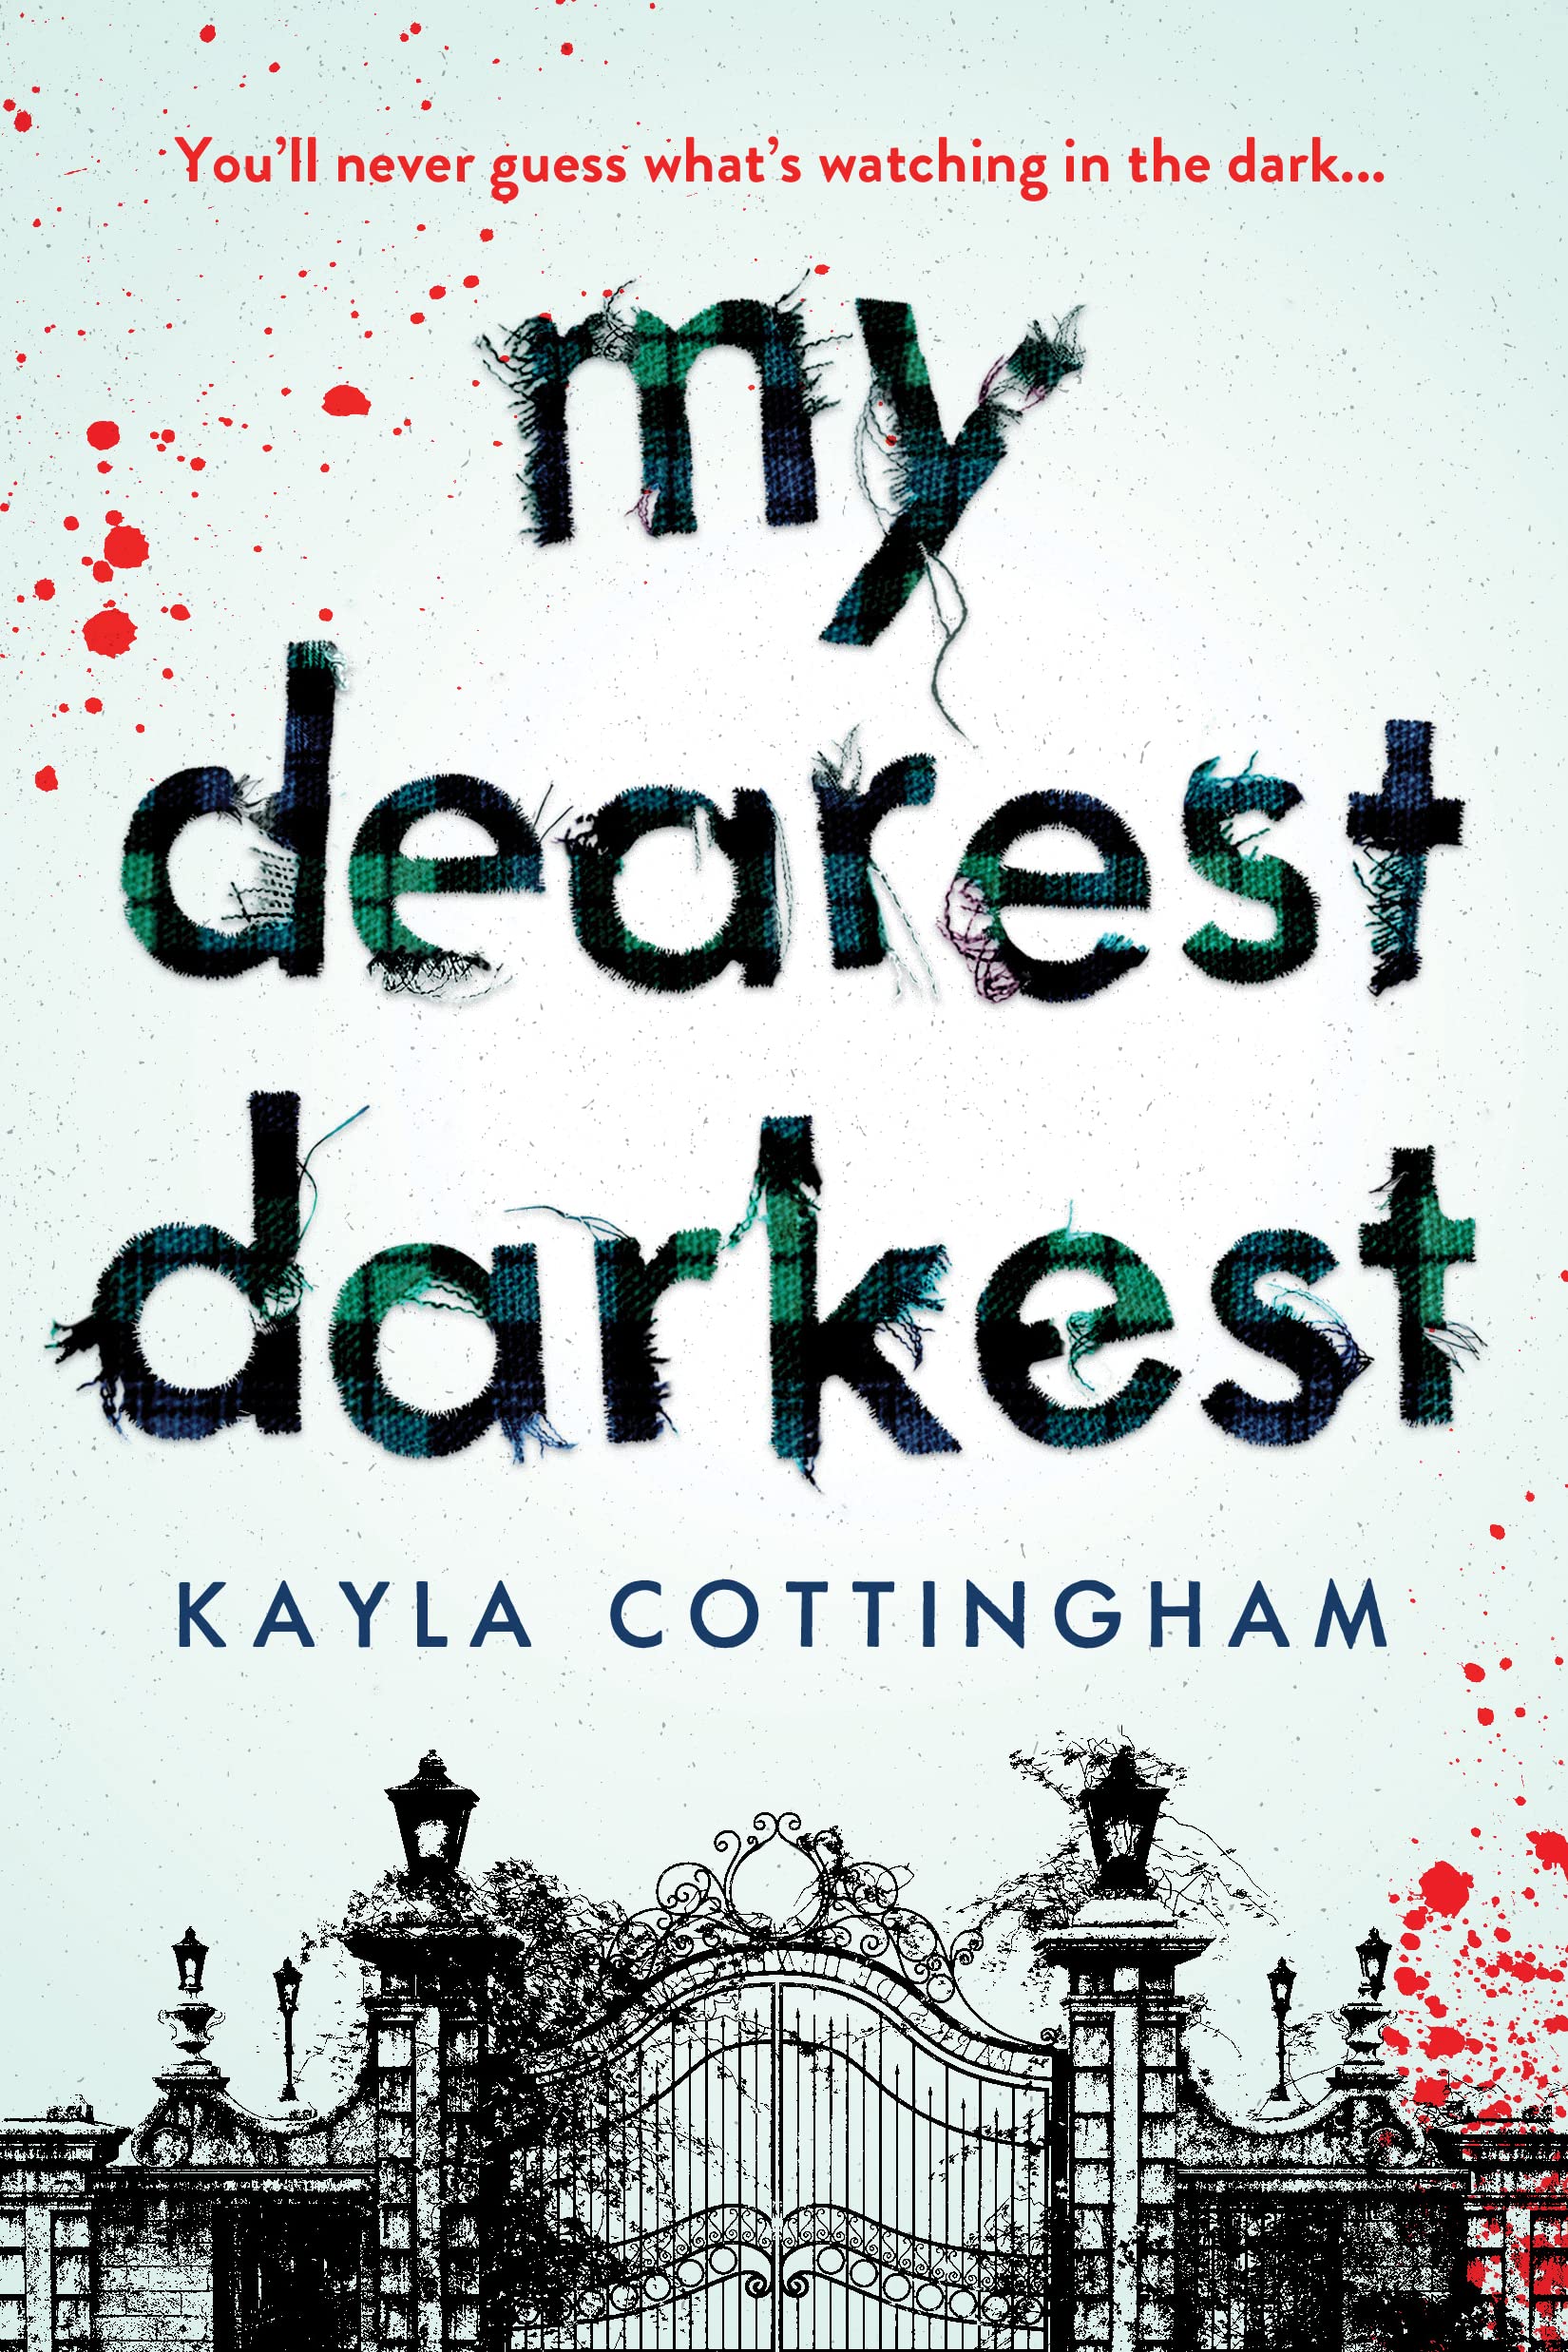 Cover of “My Dearest Darkest” by Kayla Cottingham